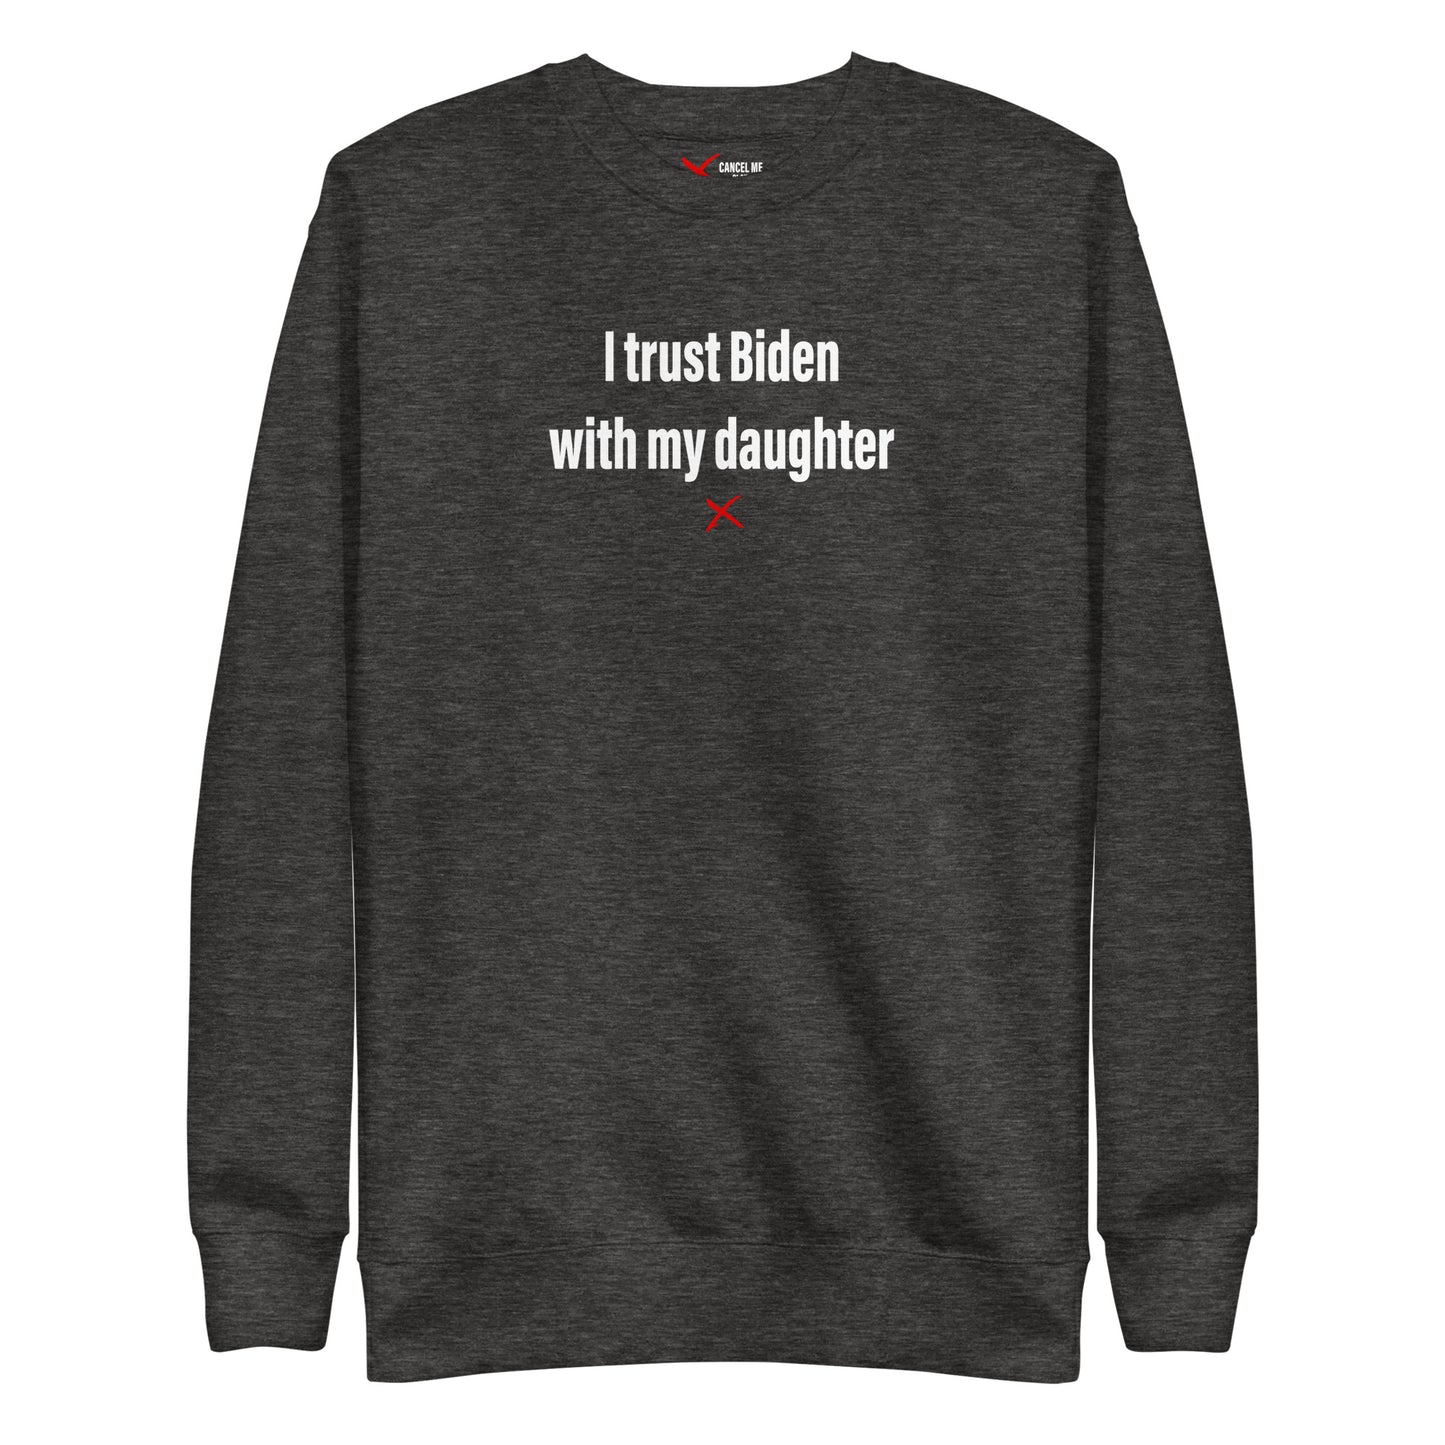 I trust Biden with my daughter - Sweatshirt